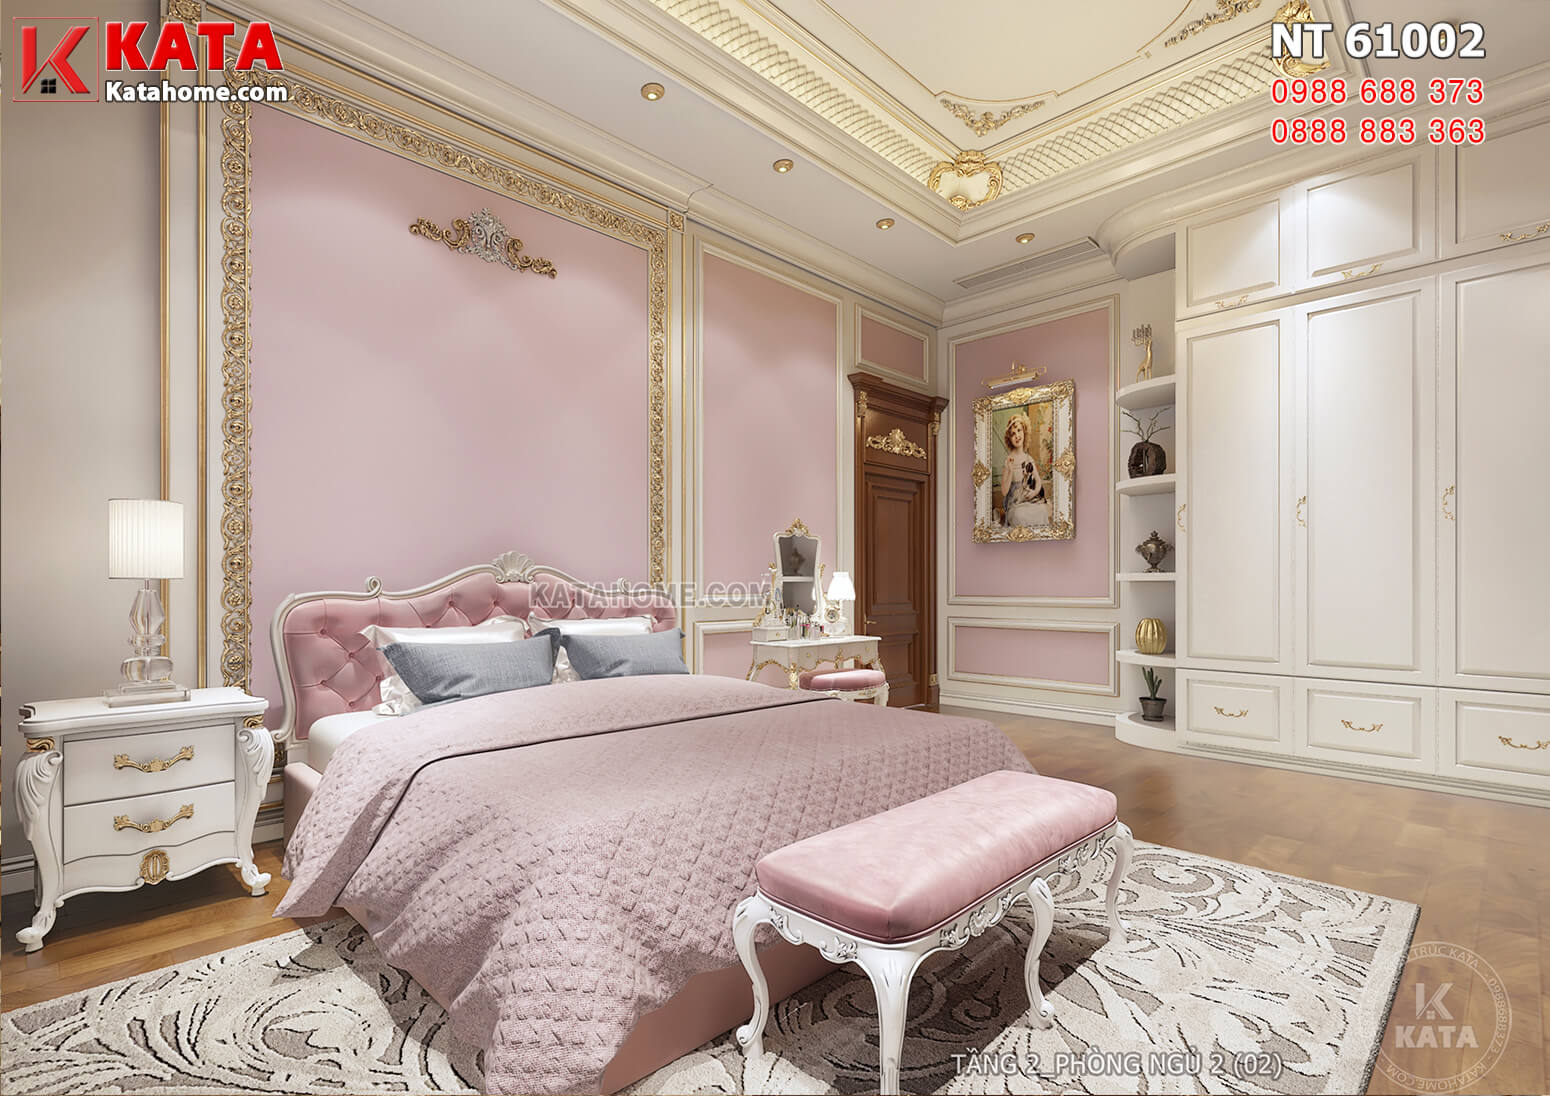 Hình ảnh: Thiết kế nội thất tân cổ điển dành cho phòng ngủ của cô con gái